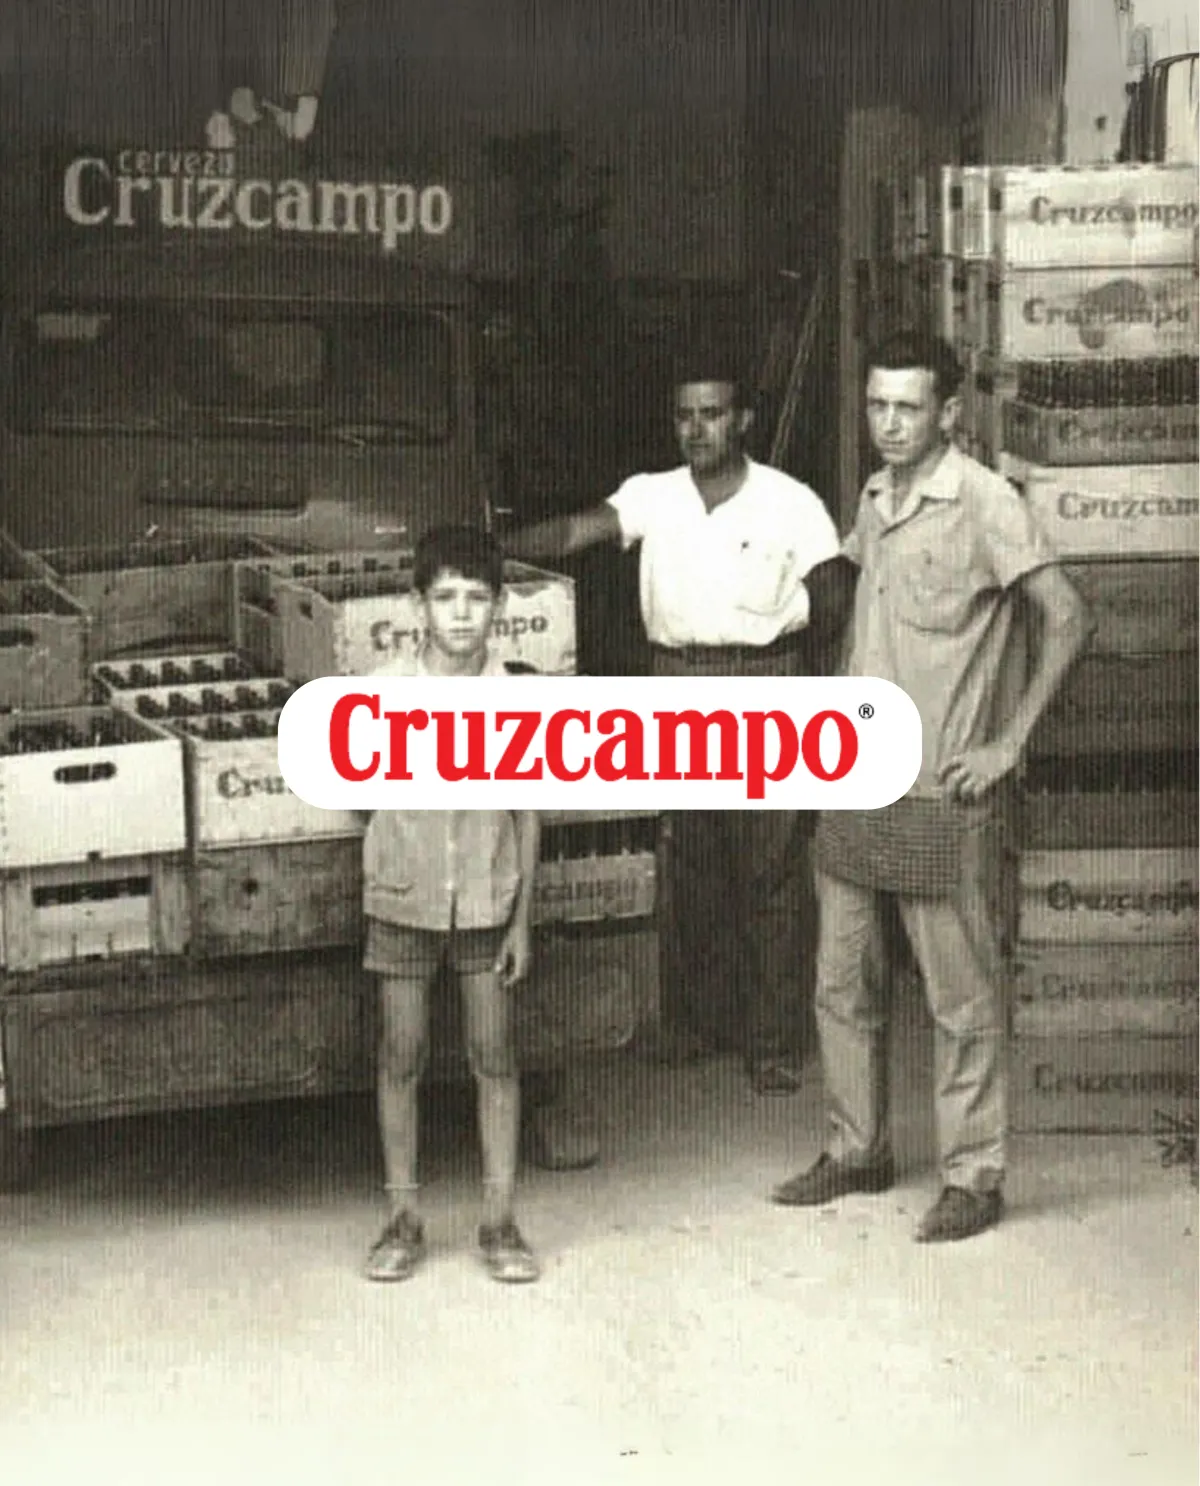 La historia de Cruzcampo, la cerveza de Sevilla, foto antigua de archivo, fábrica y reparto en Arahal